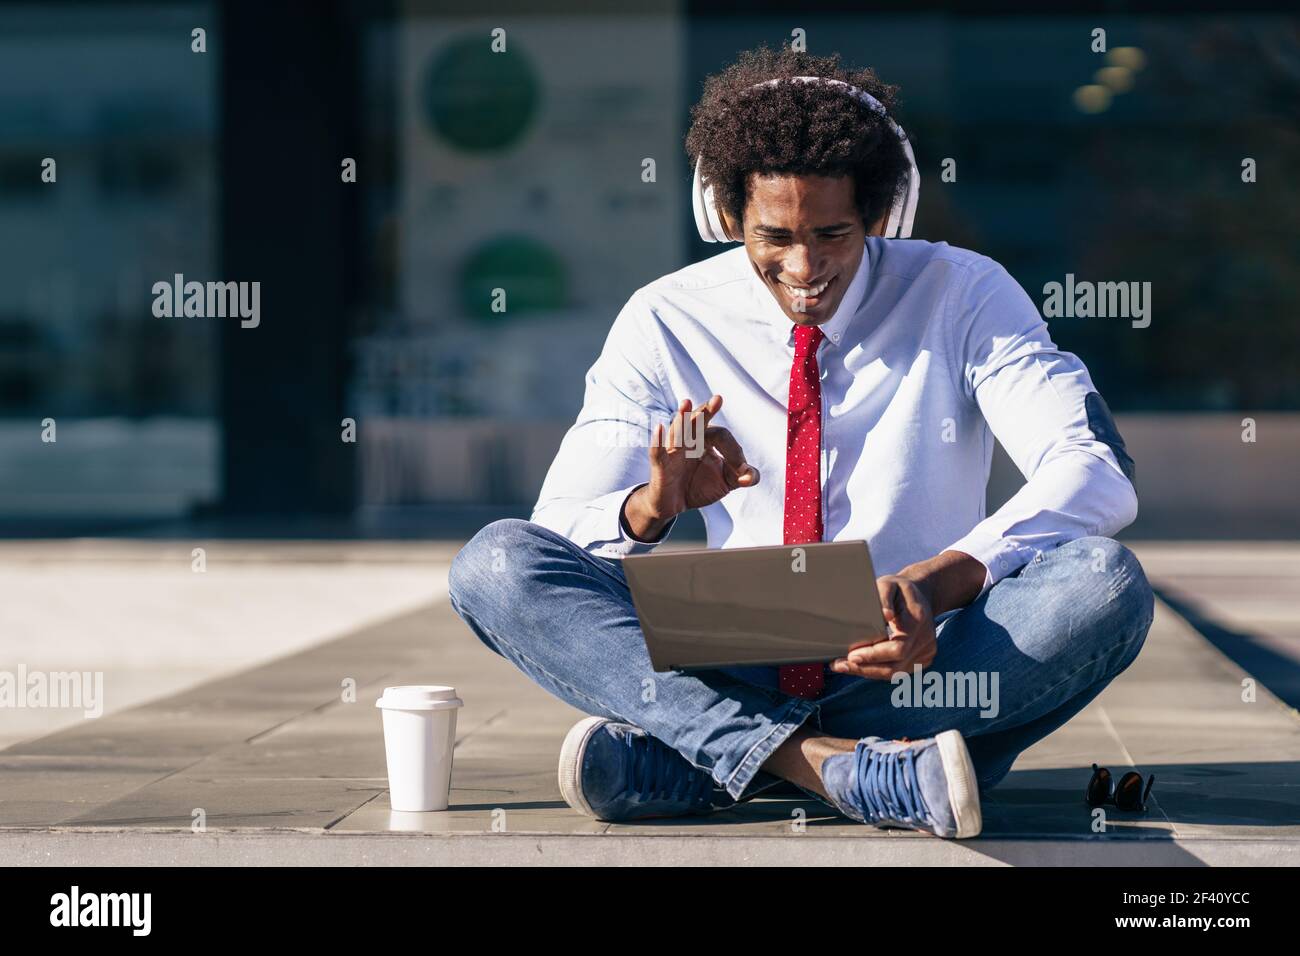 Homme d'affaires noir ayant une vidéoconférence avec ordinateur portable et casque Homme avec cheveux afro.. Homme d'affaires noir utilisant un ordinateur portable et un casque Banque D'Images